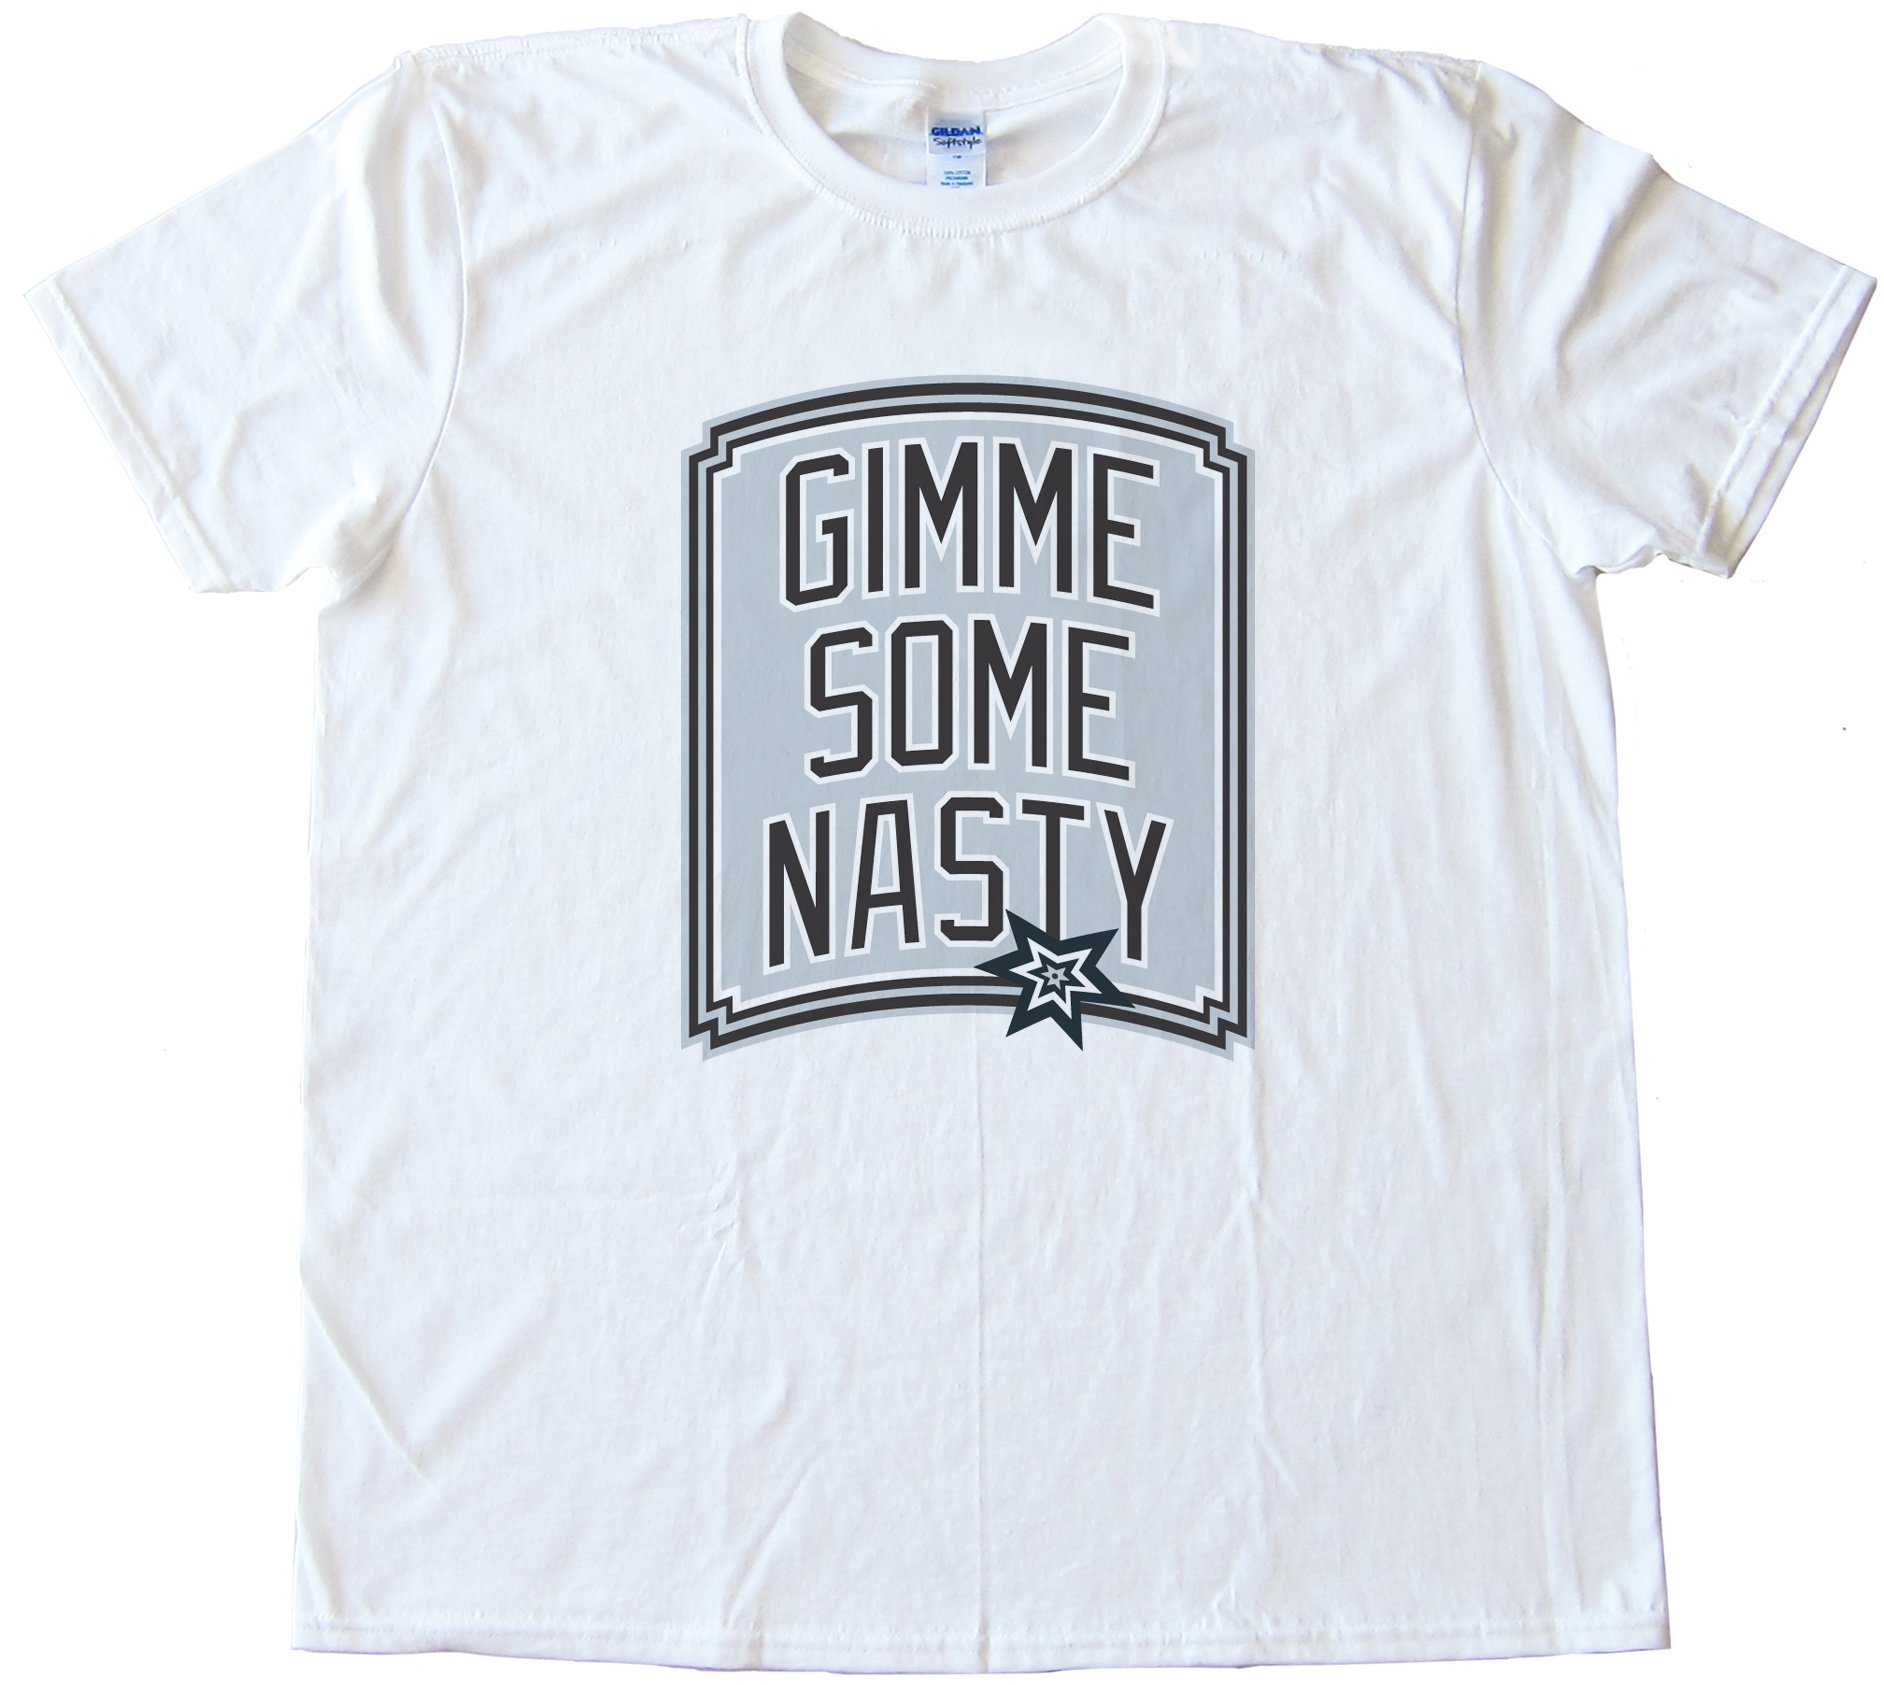 Gimme Some Nasty - San Antonio Spurs Tee Shirt